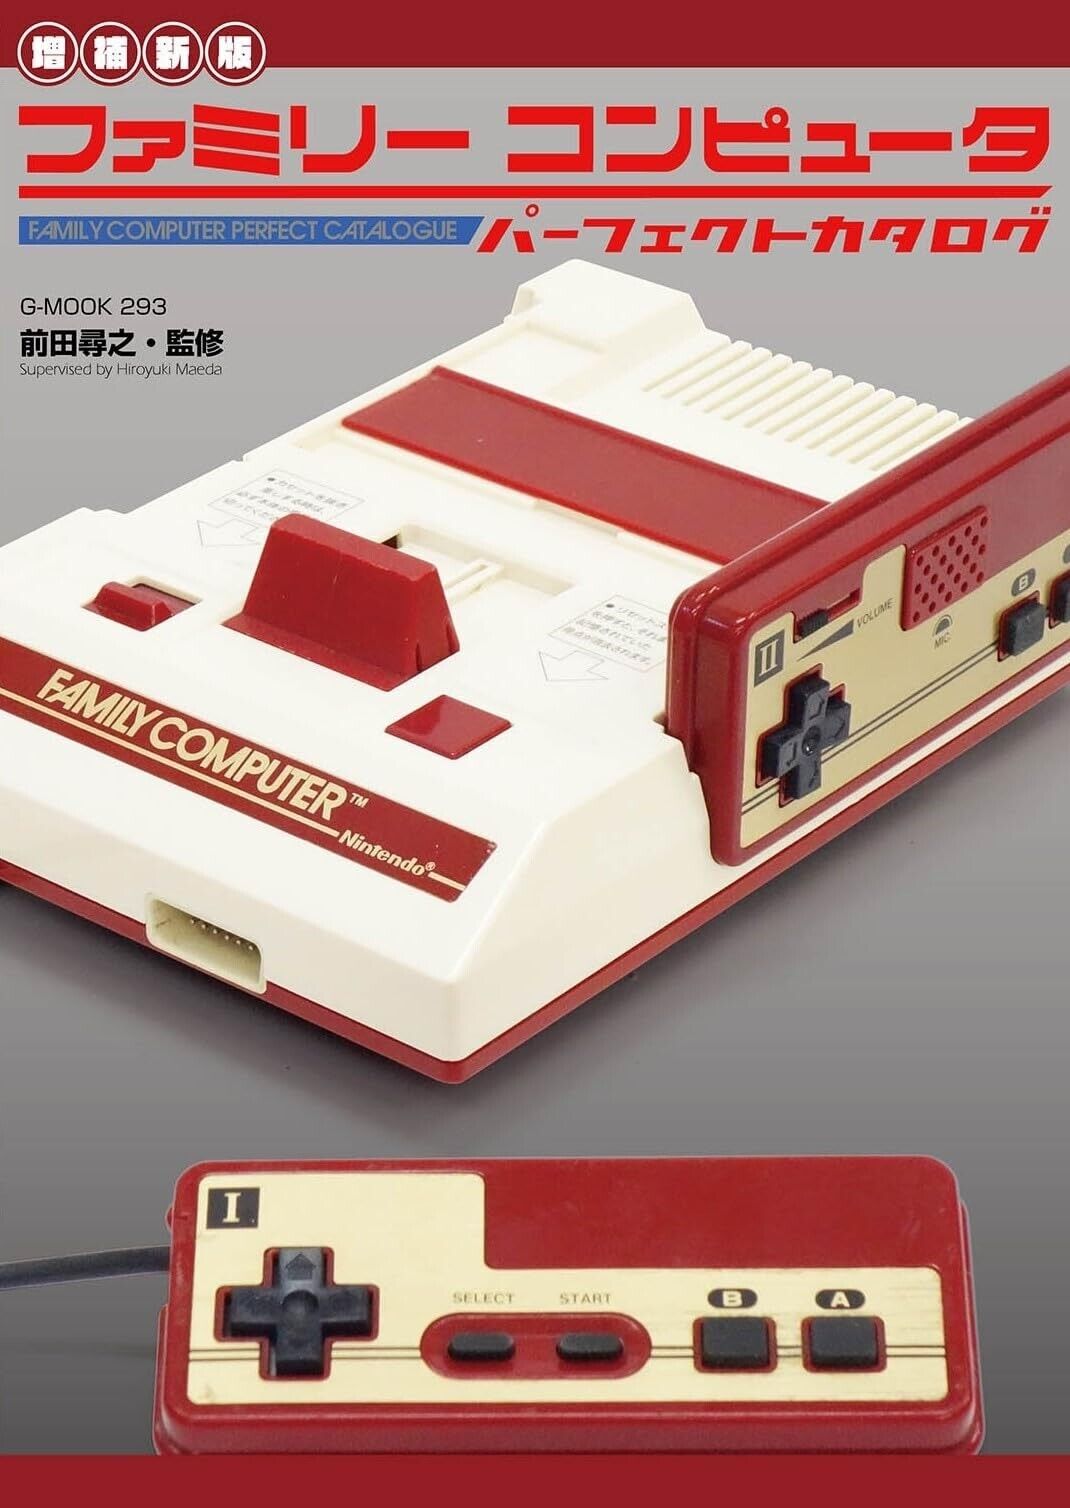 Nintendo Family Computer Perfect Catalogue | JAPAN NES Famicom Game Guide Book